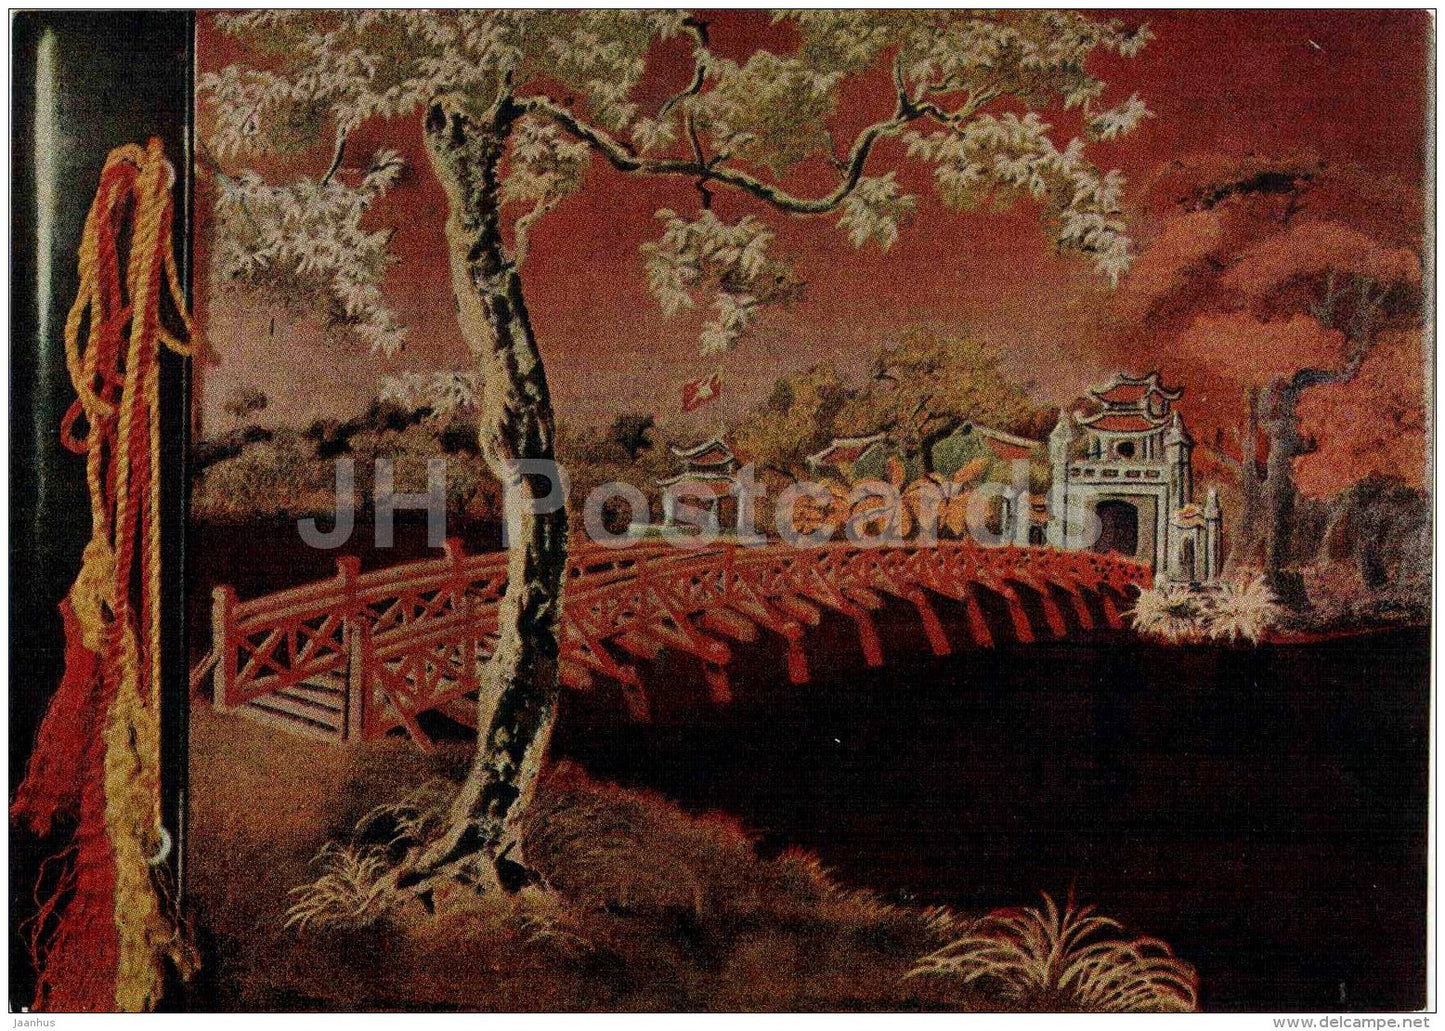 album cover , lacquer - bridge - Vietnamese art - unused - JH Postcards